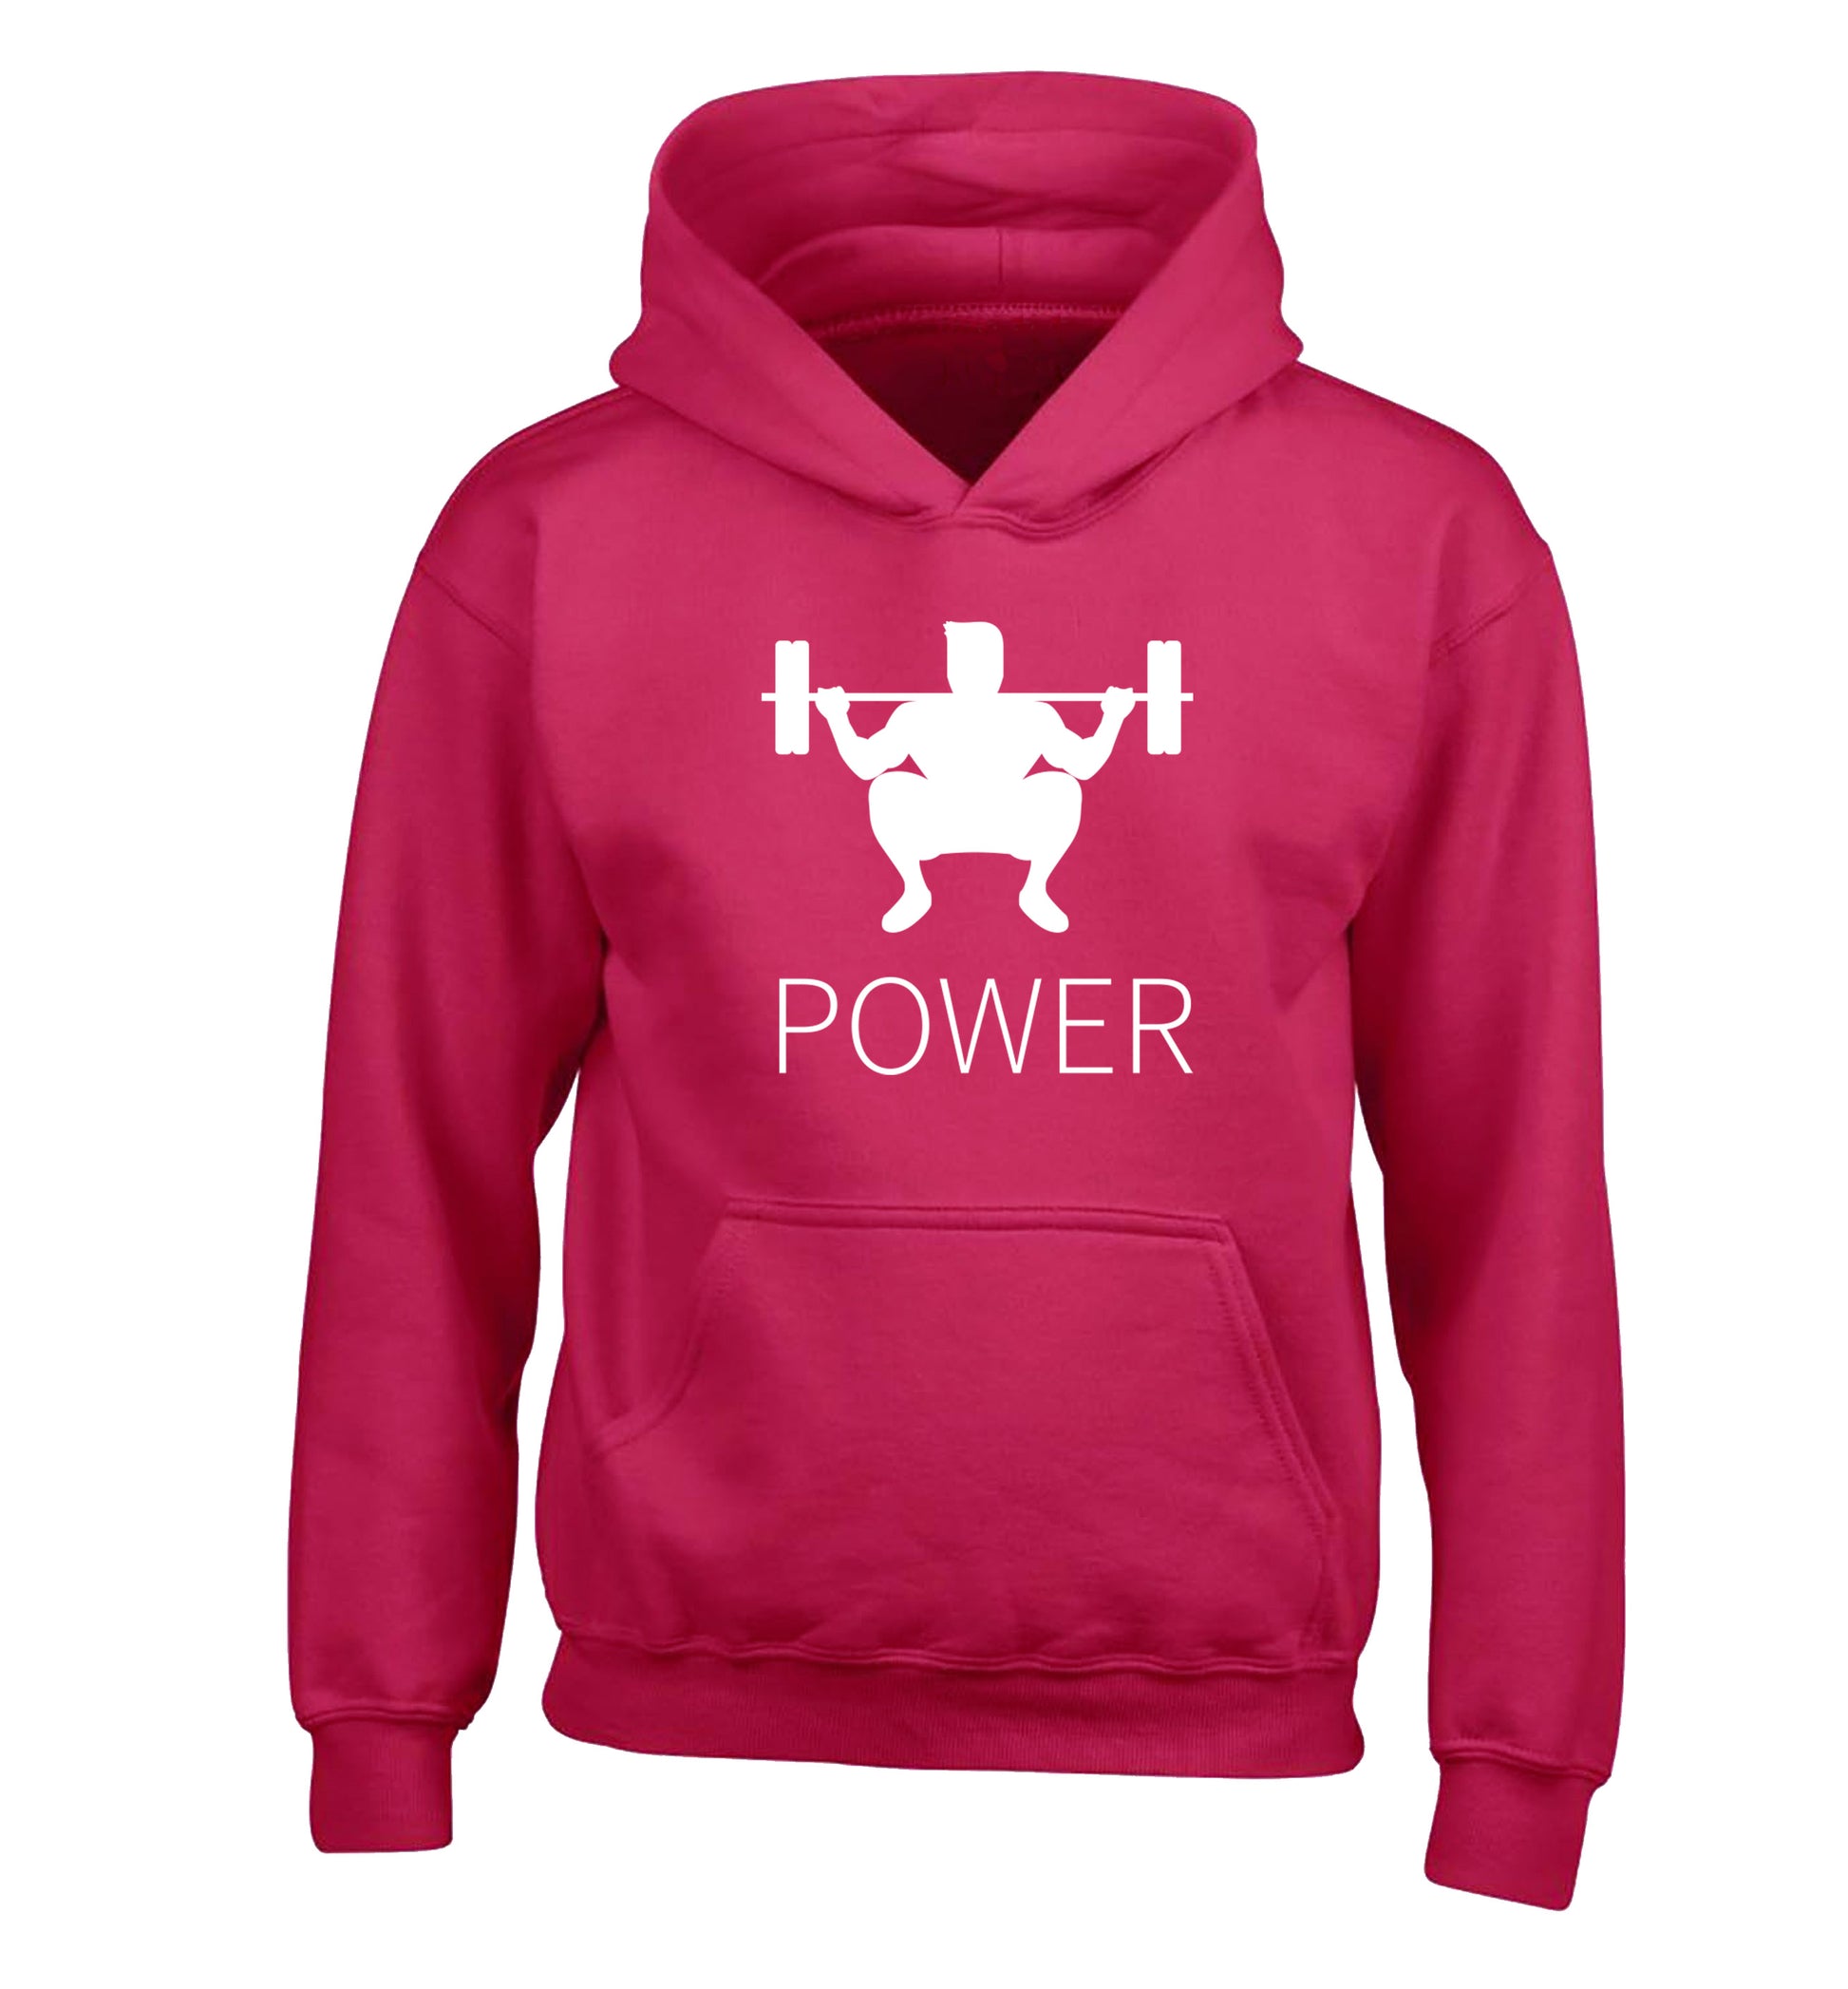 Lift power children's pink hoodie 12-13 Years